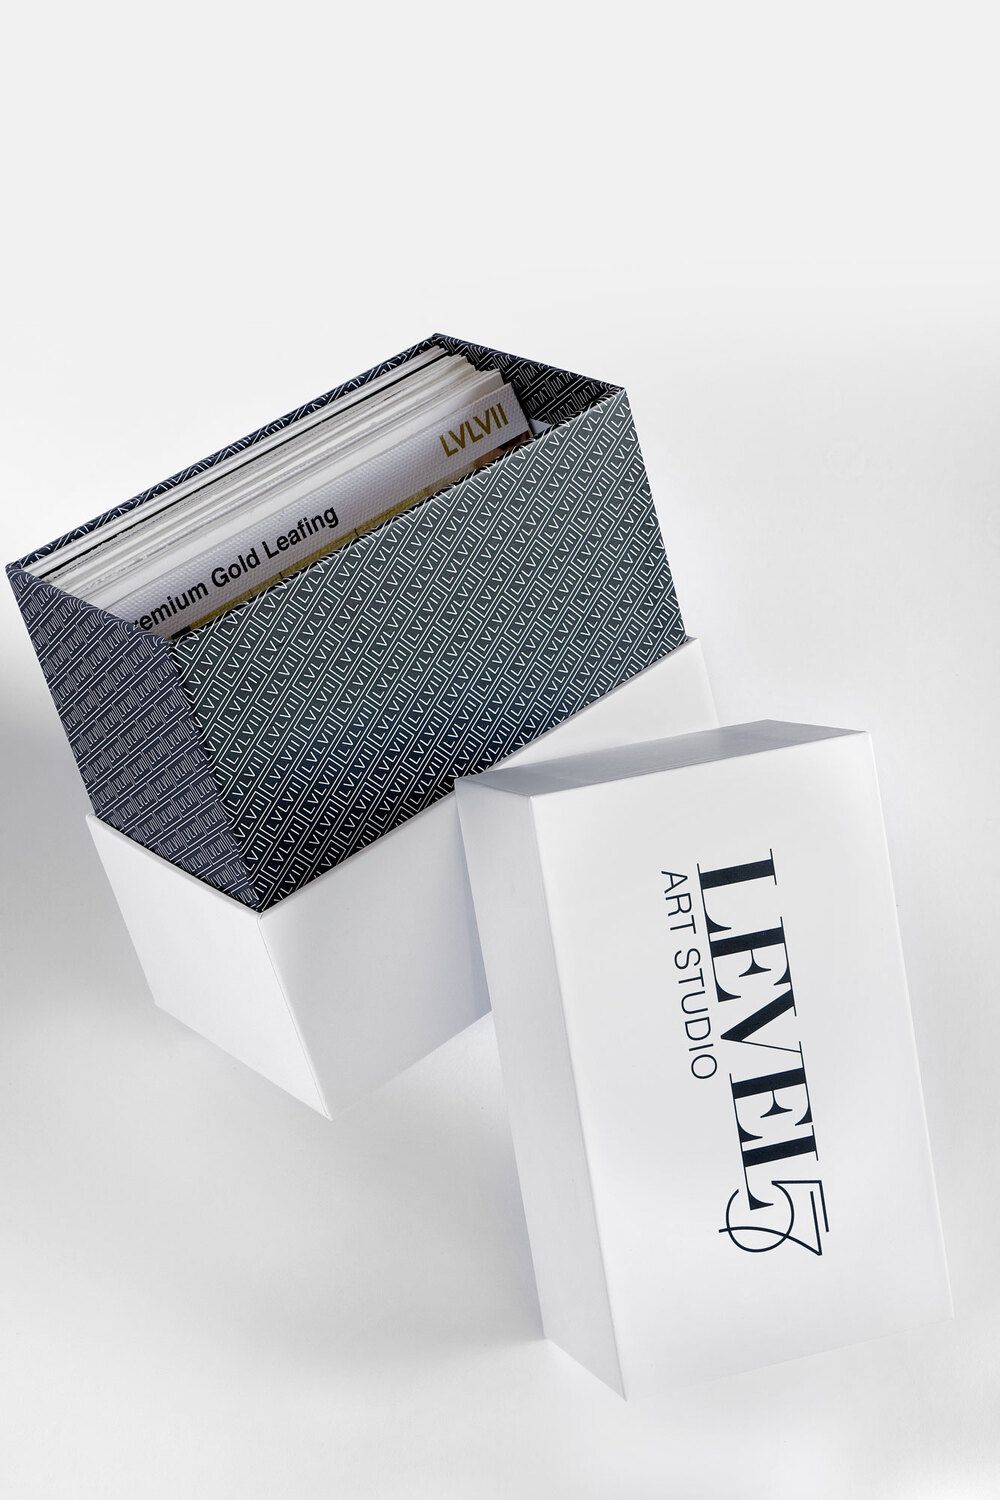 luxury-packaging